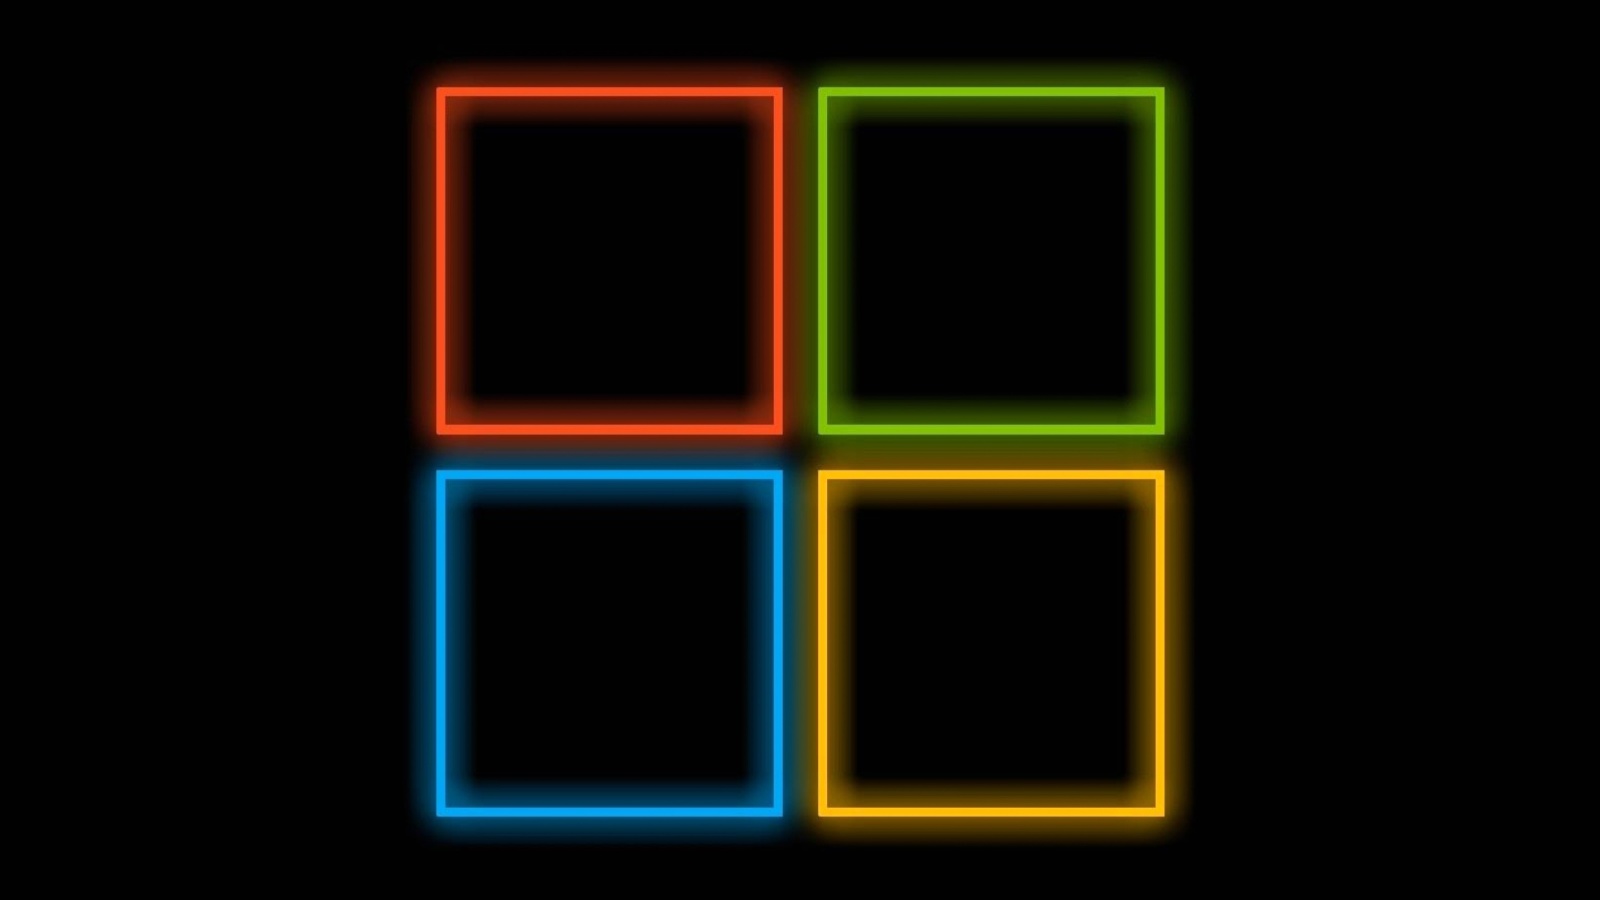 OS Windows 10 Neon wallpaper 1600x900